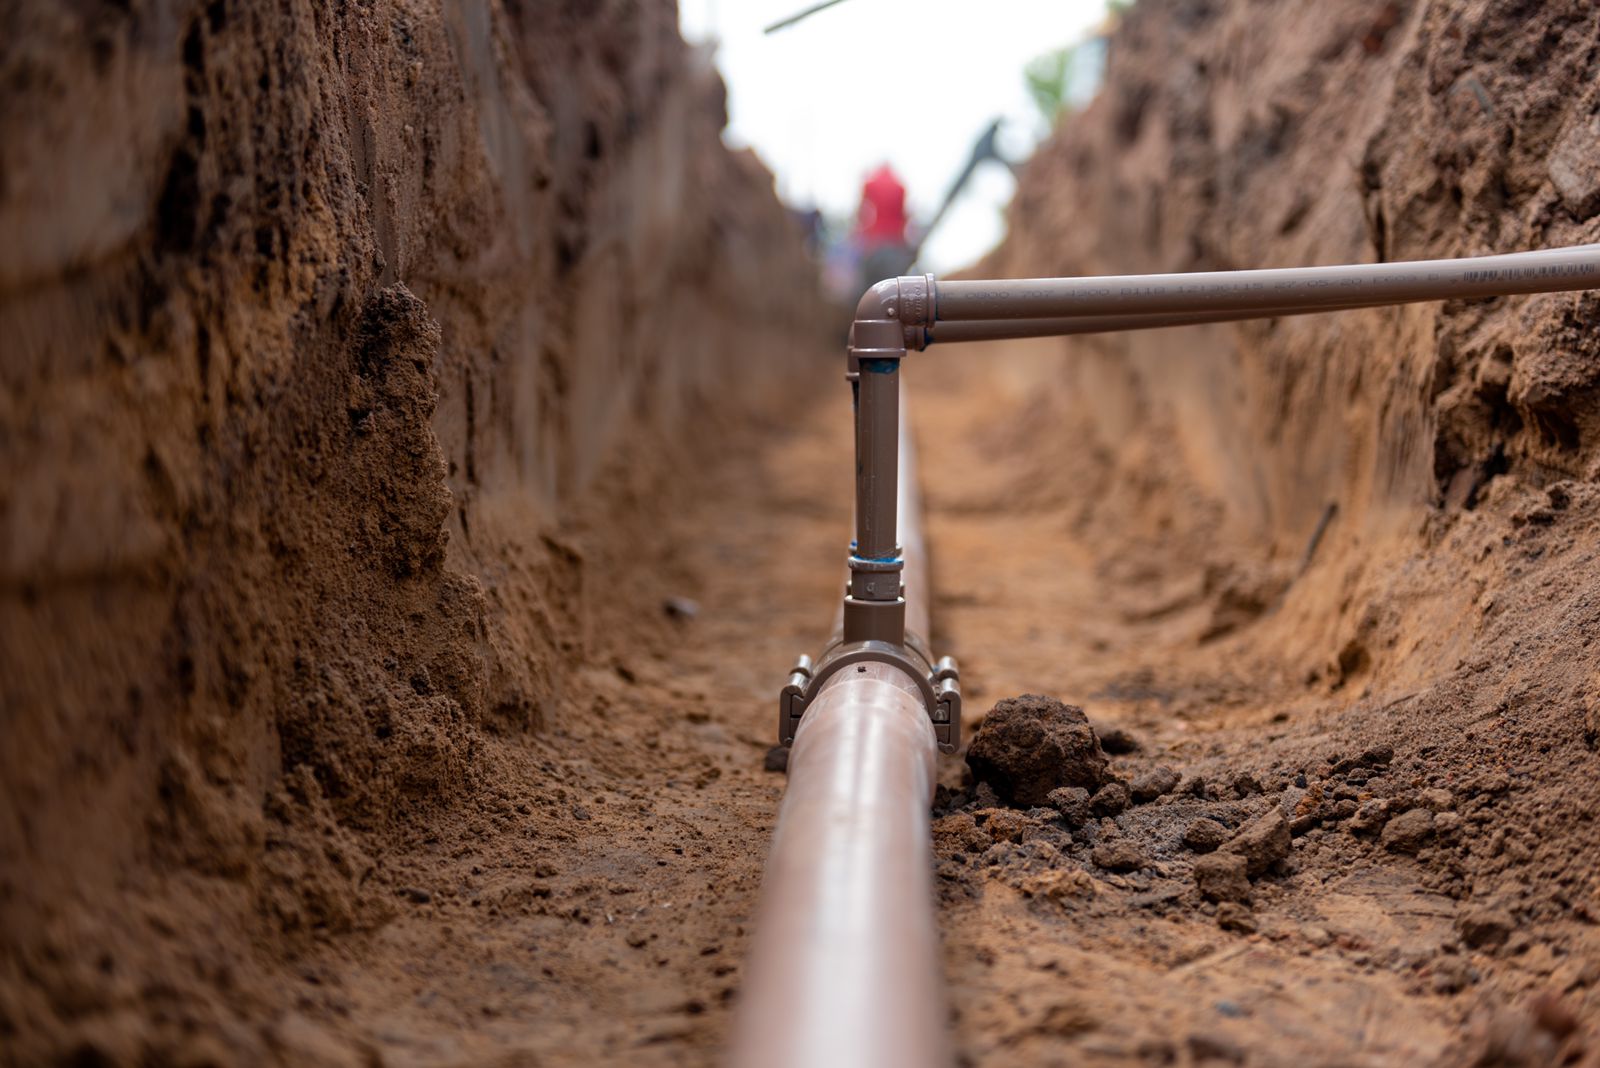  Autorizada a abertura de uma linha de crédito de 72 milhões de euros para a construção e operação de sistemas de abastecimento de água no Huambo, Bié e Cunene